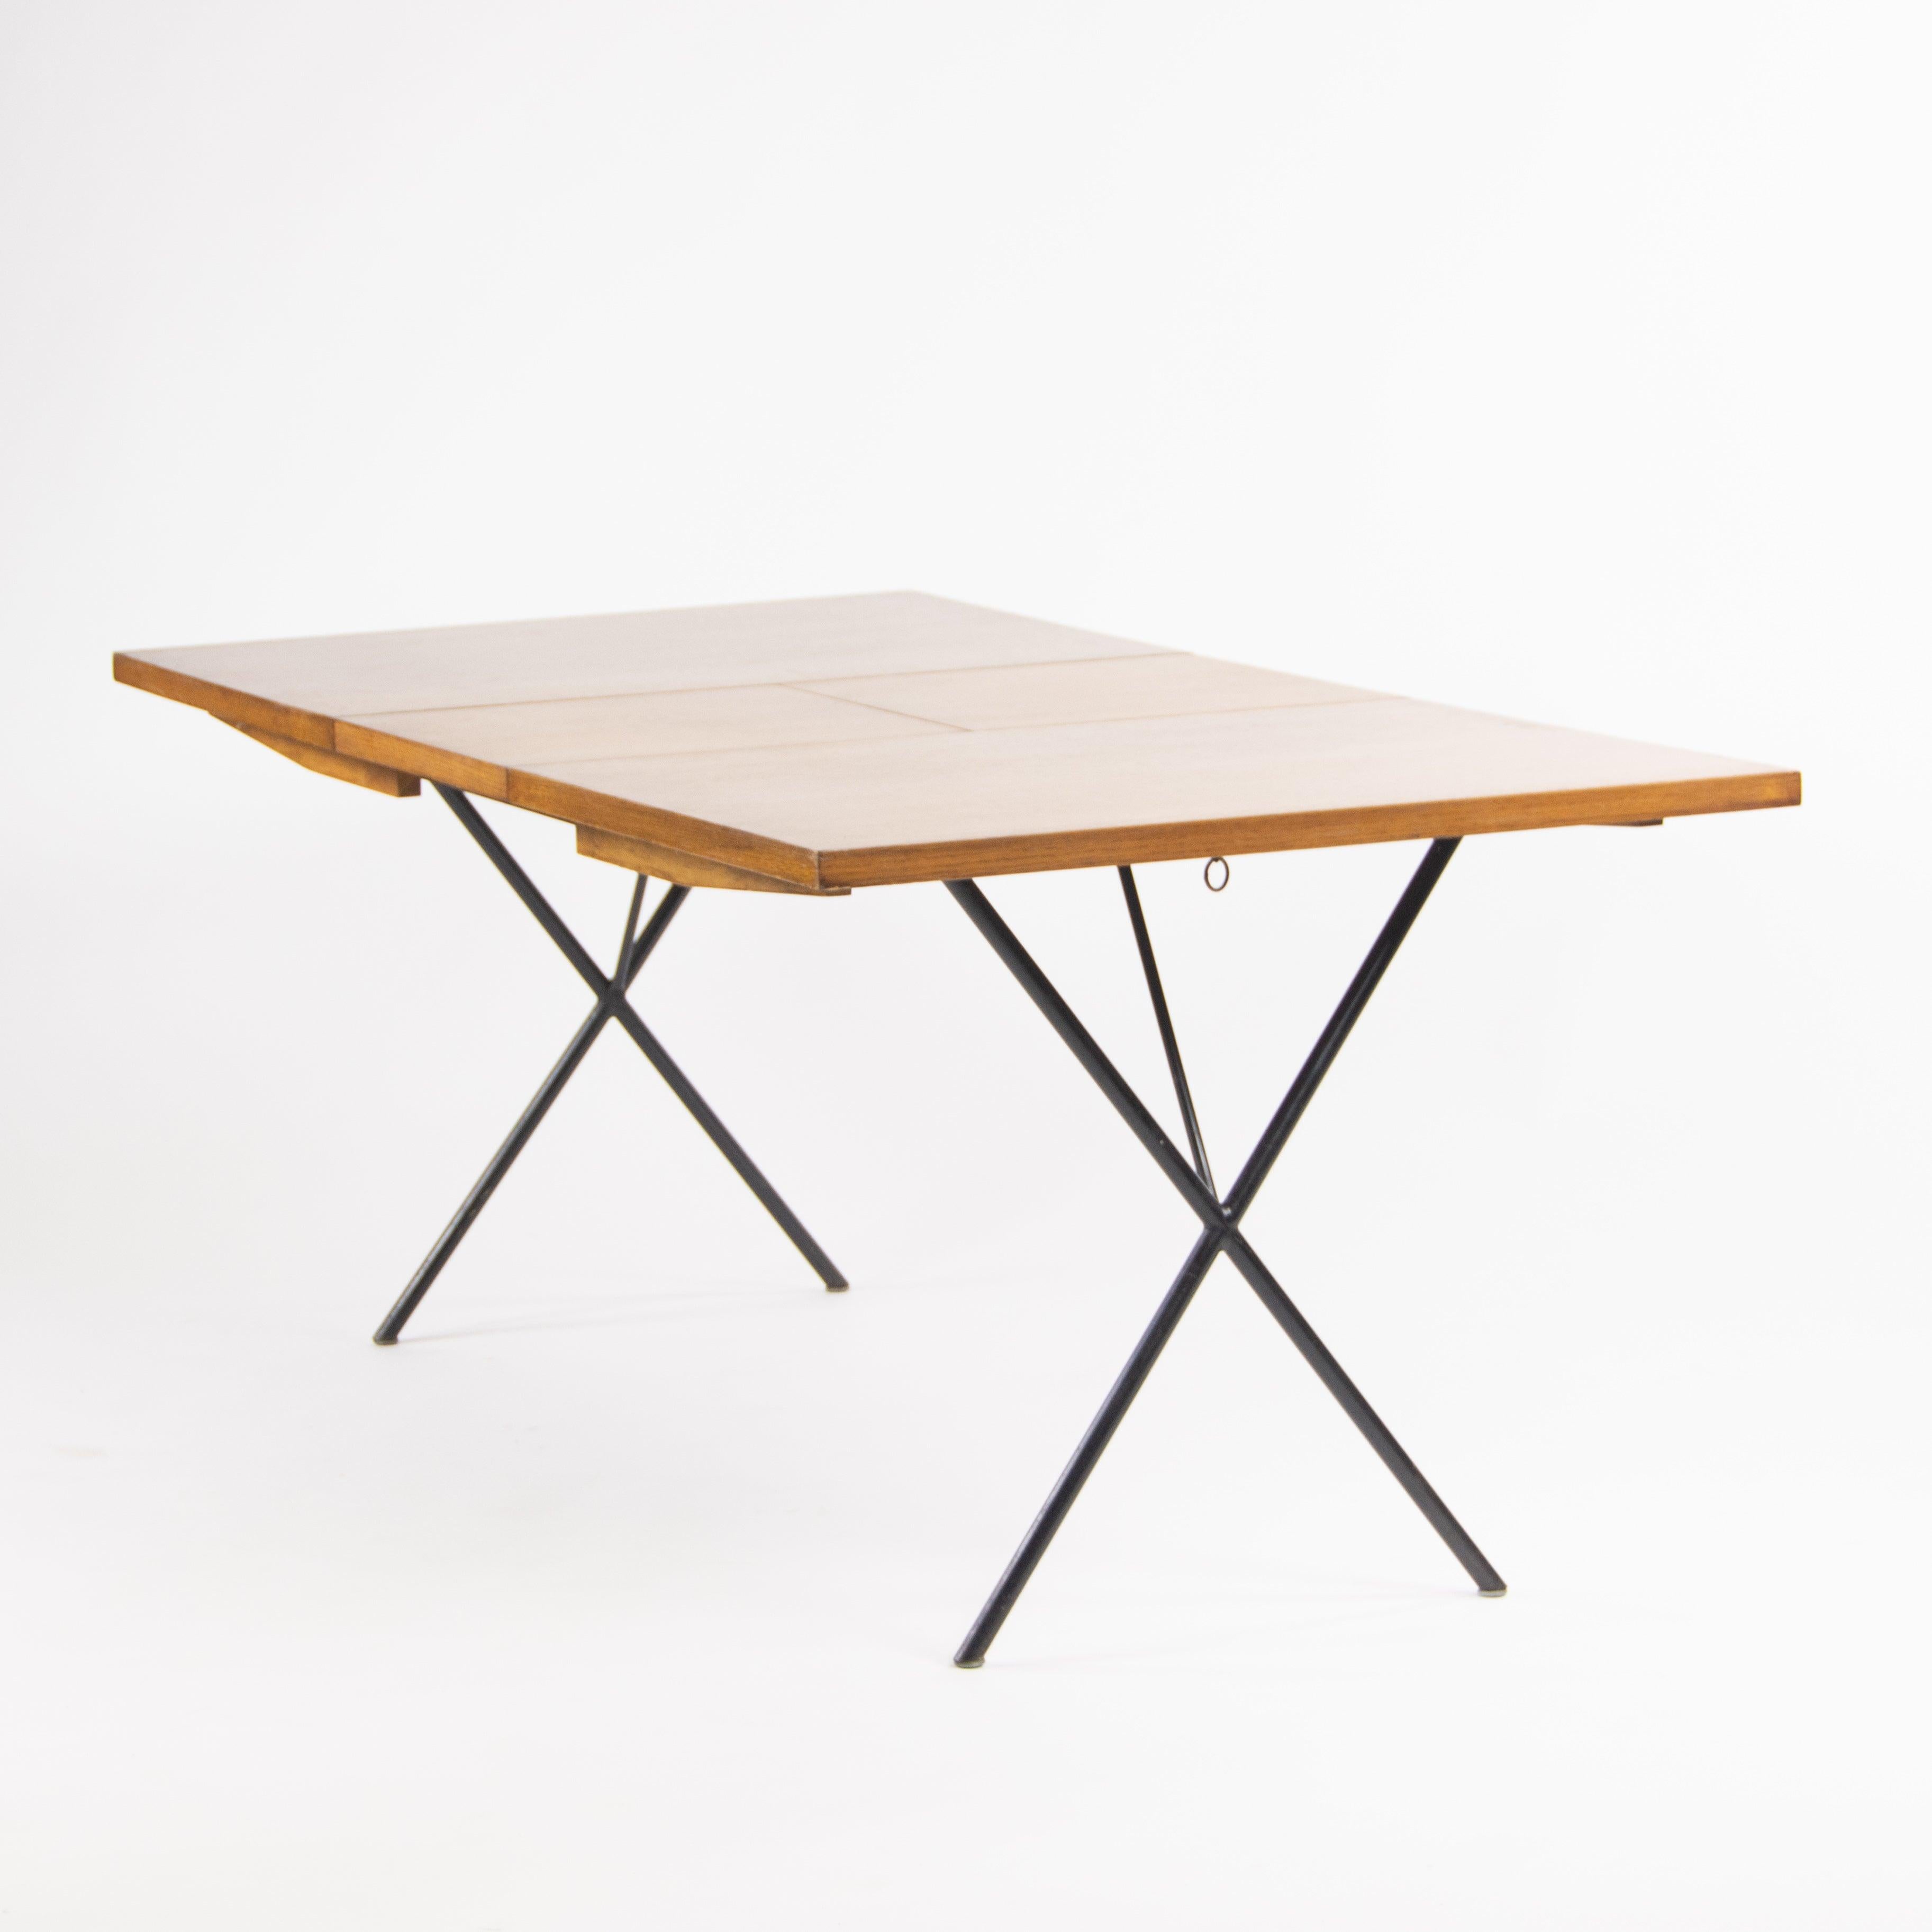 Zum Verkauf steht ein seltener und beeindruckender originaler George Nelson & Associates X-Leg Esstisch aus Eiche. Dieses Exemplar ist ein klassisches George-Nelson-Stück mit röhrenförmigen X-Beinen und einer kontrastierenden Holzplatte. 
Der Tisch